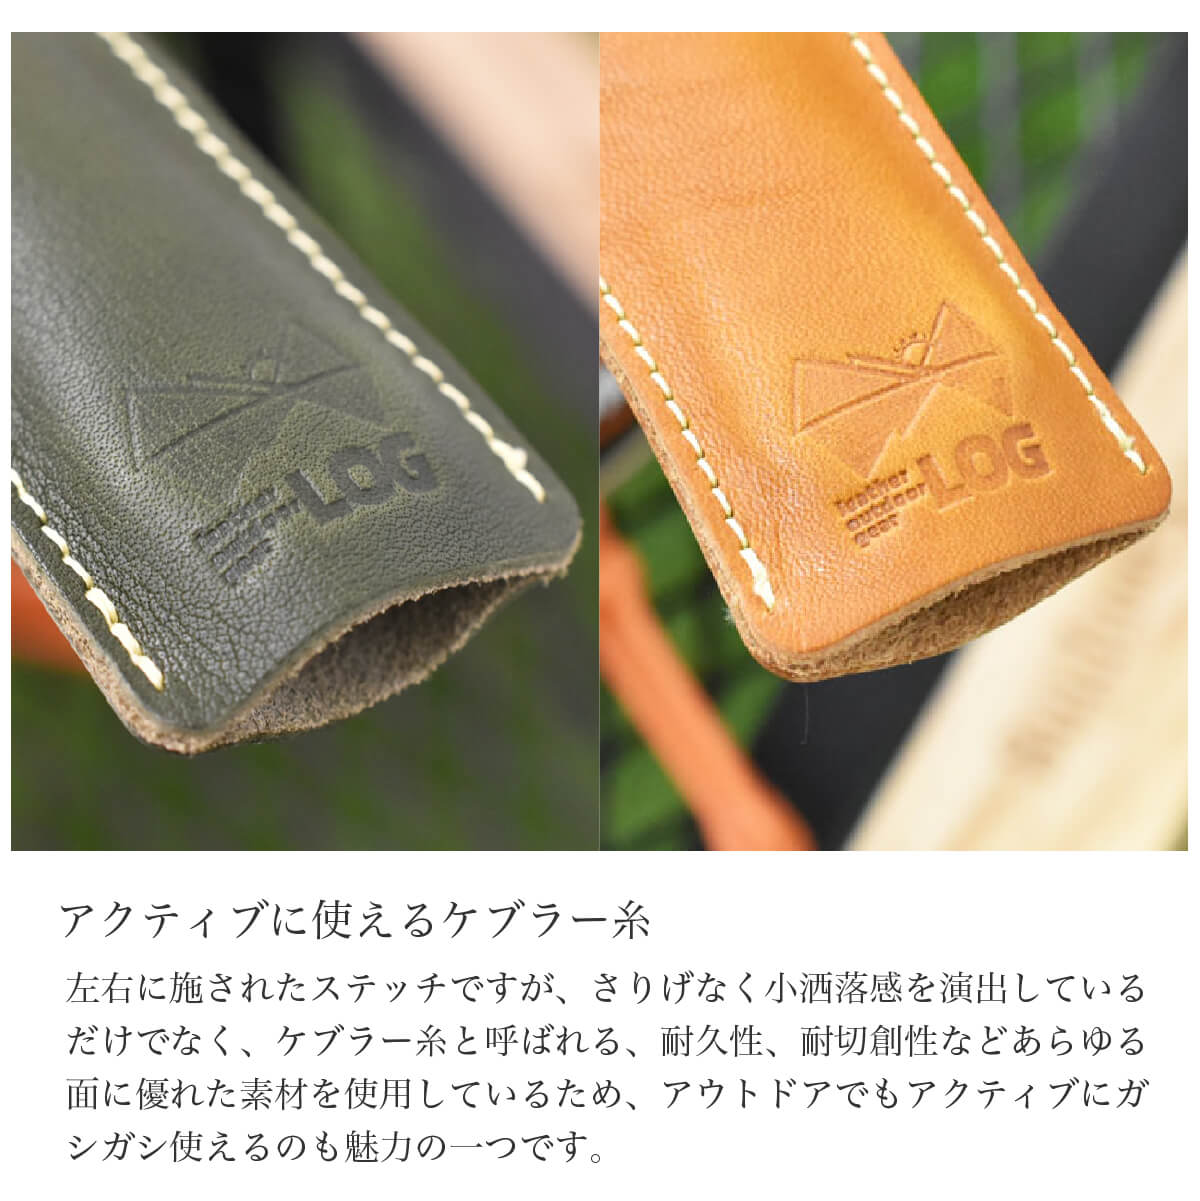 スキレットカバー 栃木レザー 日本製 ハンドルカバー カバー 持ち手 